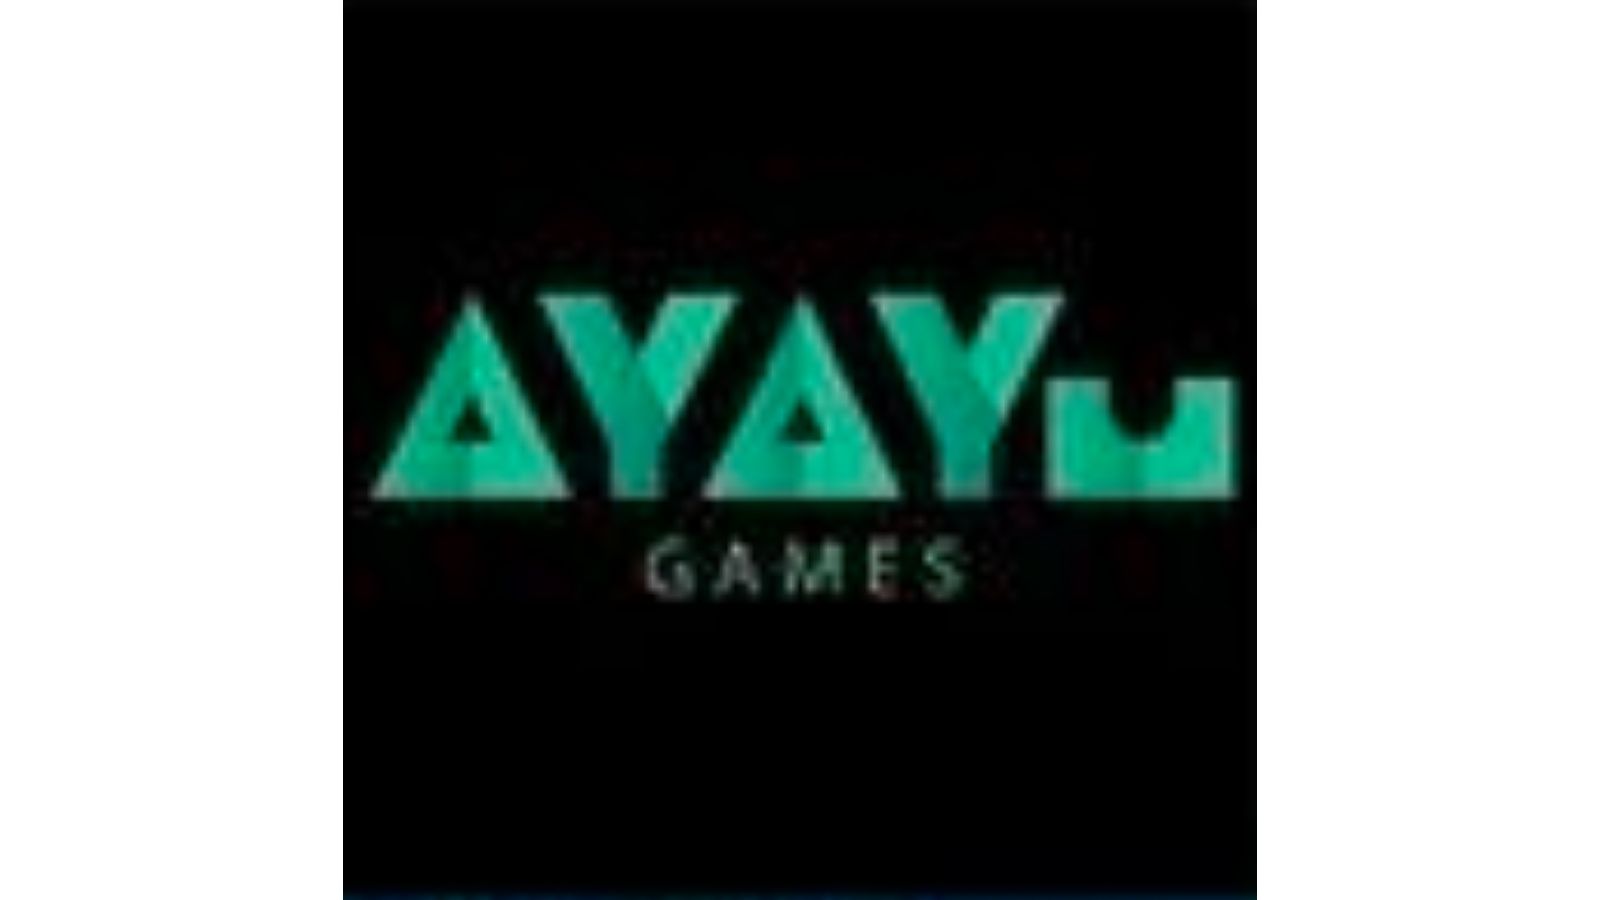 AyayuGames——专注高质量VR沉浸式体验的创造和开发